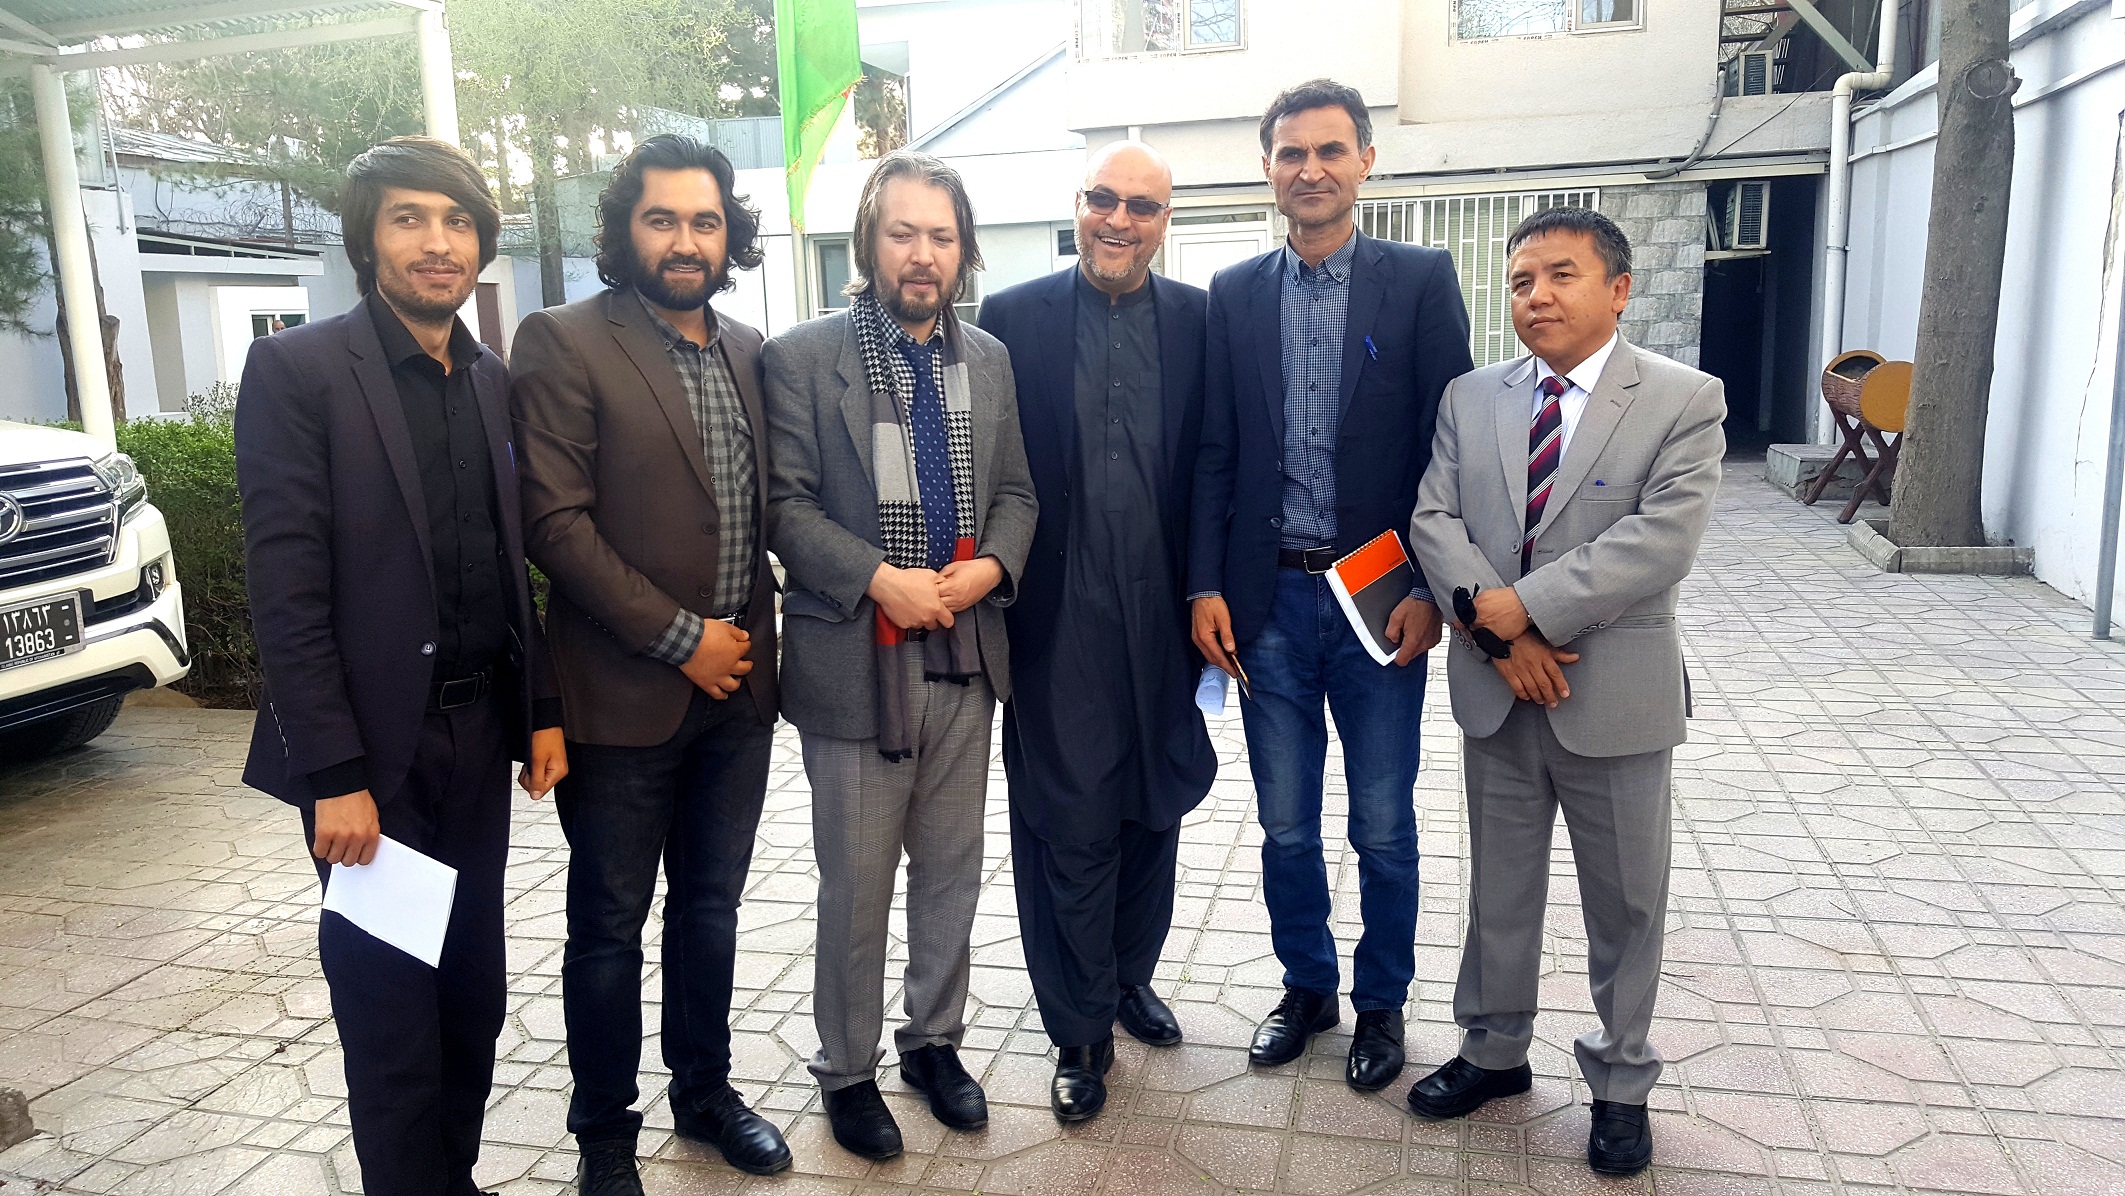 تصاویر از نشست مشورتی شاعران نویسندگان و خبرنگاران با جناب محترم محمد فرید حمیدی لوی سارنوال جمهوری اسلامی افغانستان 